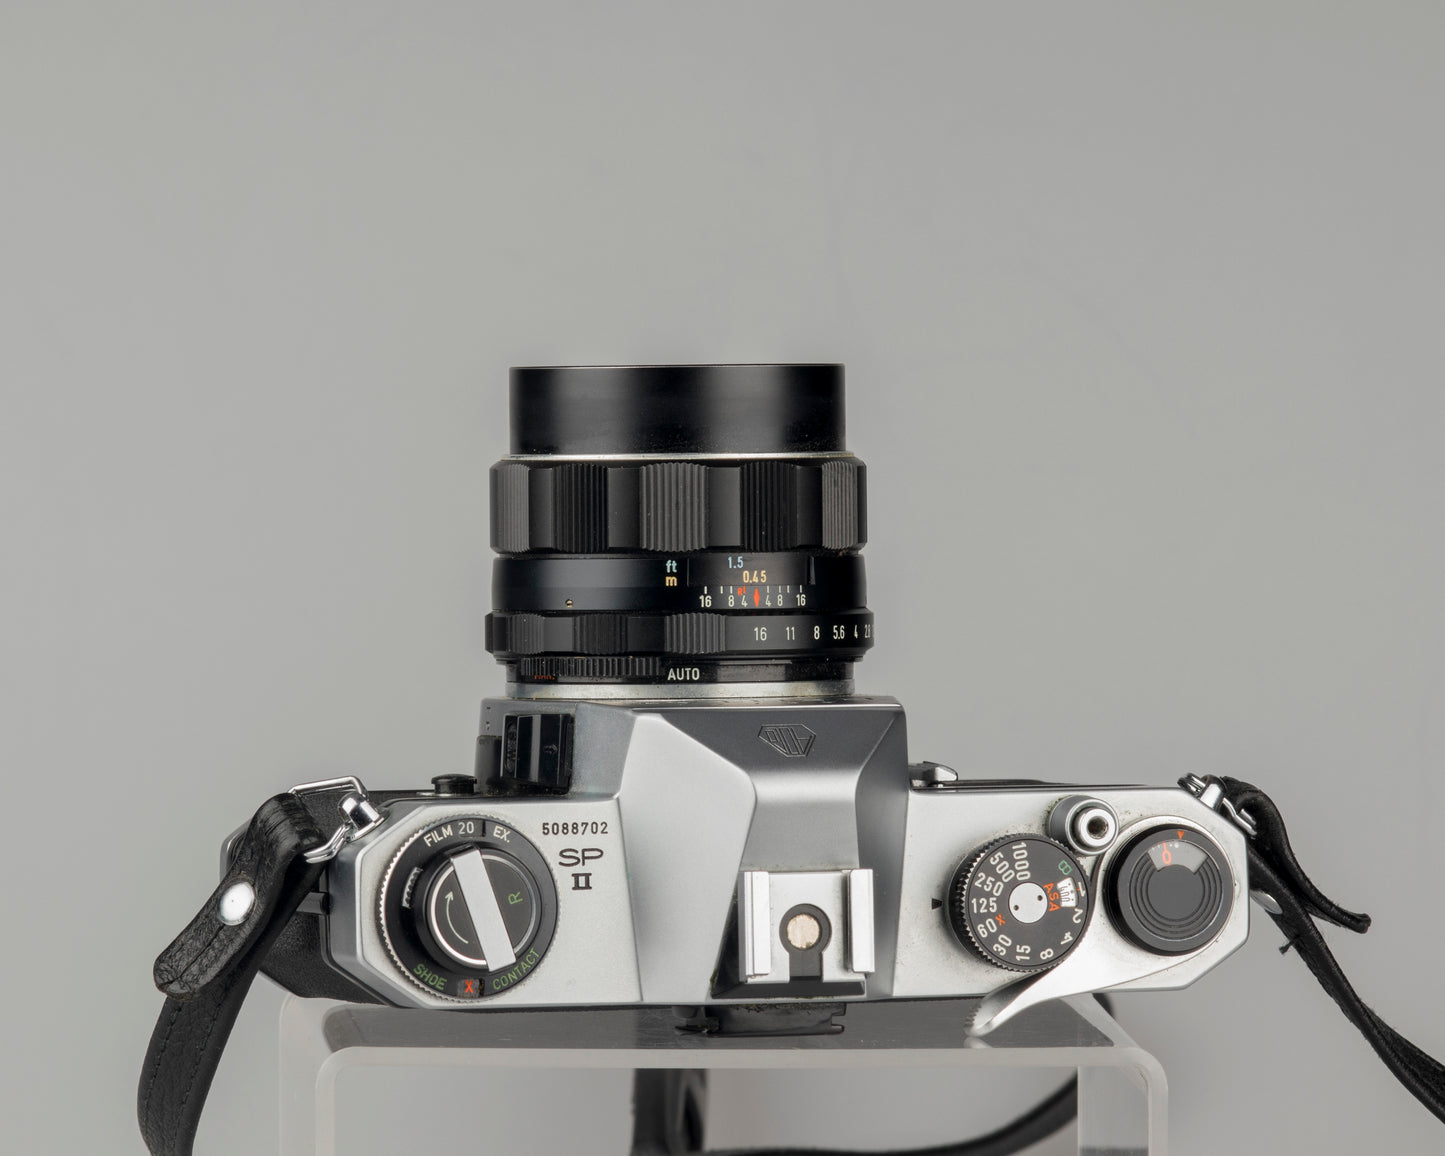 Pentax Spotmatic SP II w/ SMC Takumar 55mm f1.8 lens + leather case // modified for modern batteries